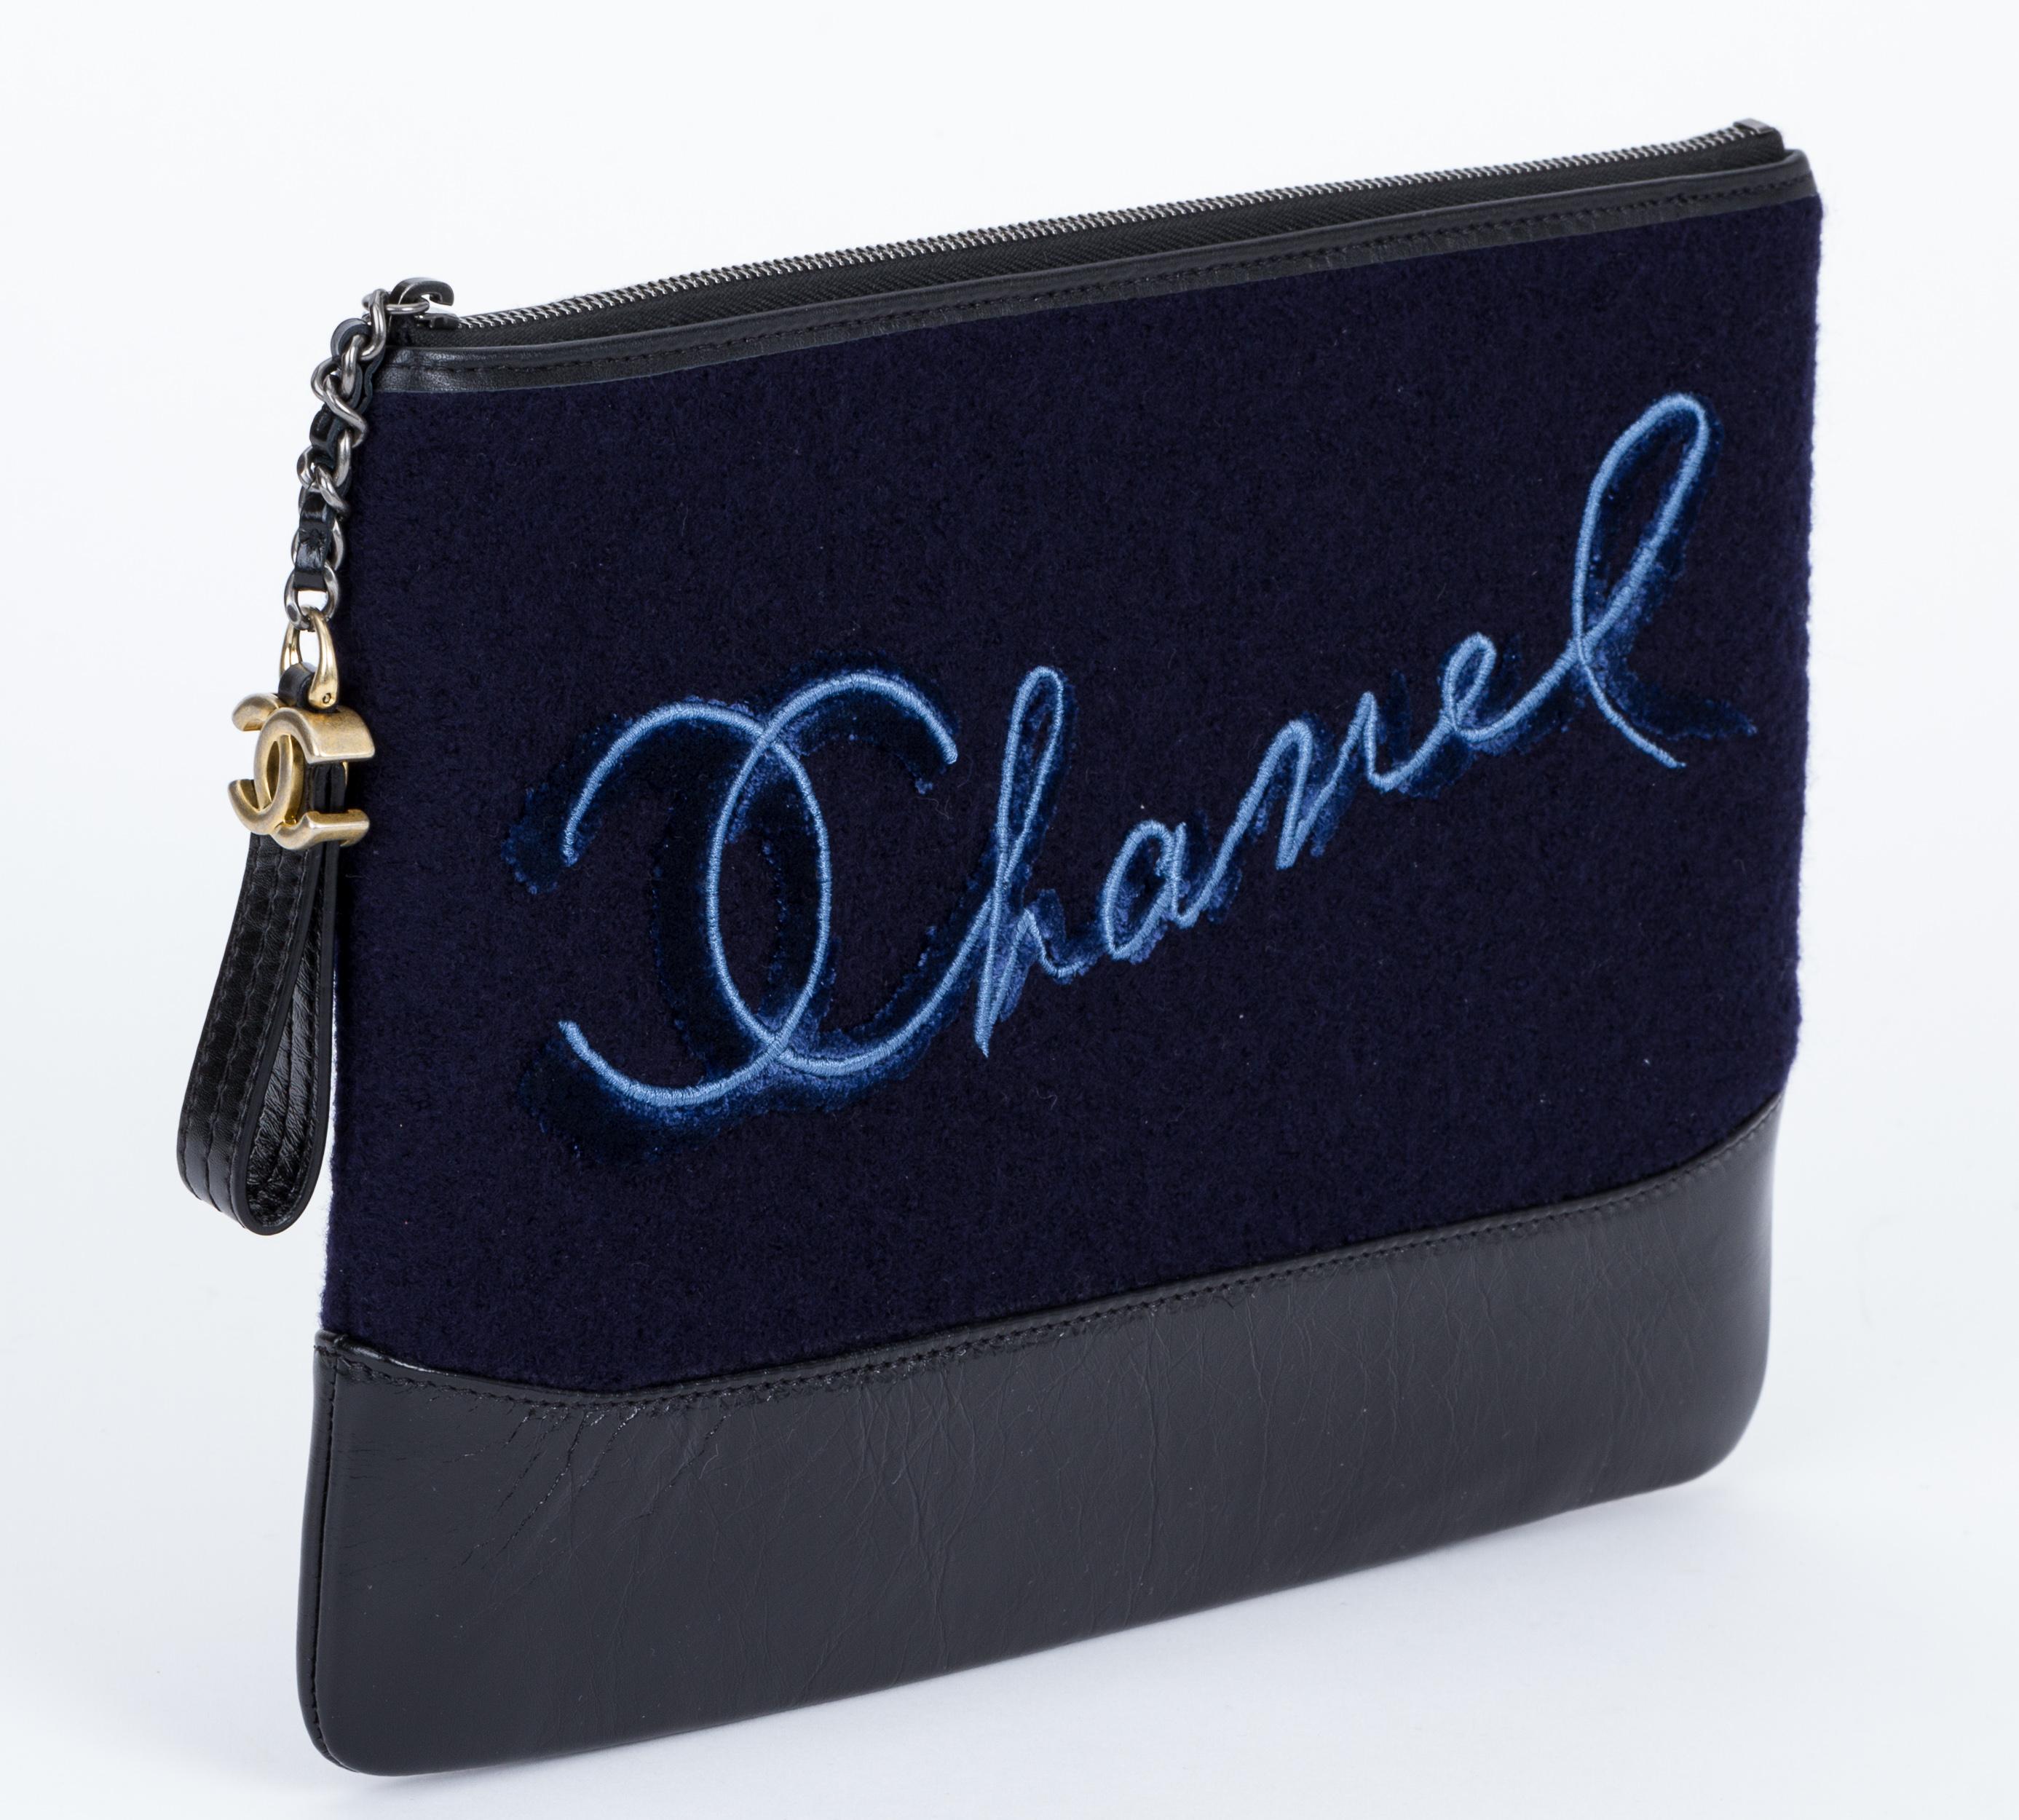 Chanel brandneu in Box marineblau und schwarz Paris Salzburg Kupplung. Akzent aus Leder und Filz. Mit Hologramm, Ausweis, Broschüre, Schutzhülle, Kamelie, Band und Schachtel.